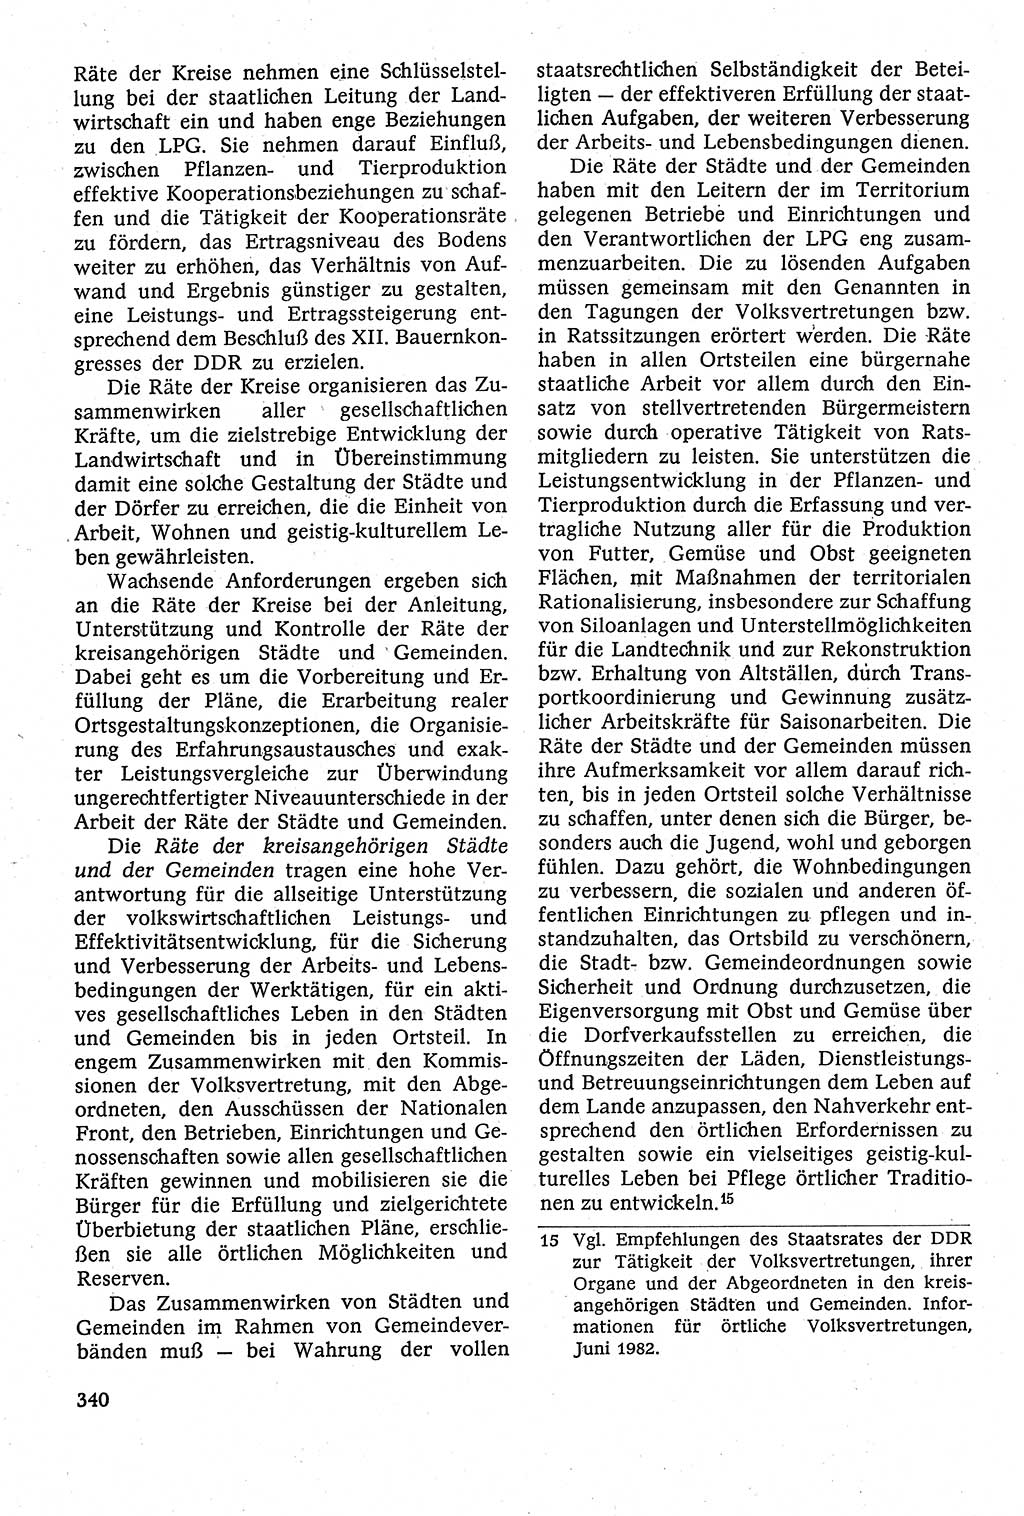 Staatsrecht der DDR [Deutsche Demokratische Republik (DDR)], Lehrbuch 1984, Seite 340 (St.-R. DDR Lb. 1984, S. 340)